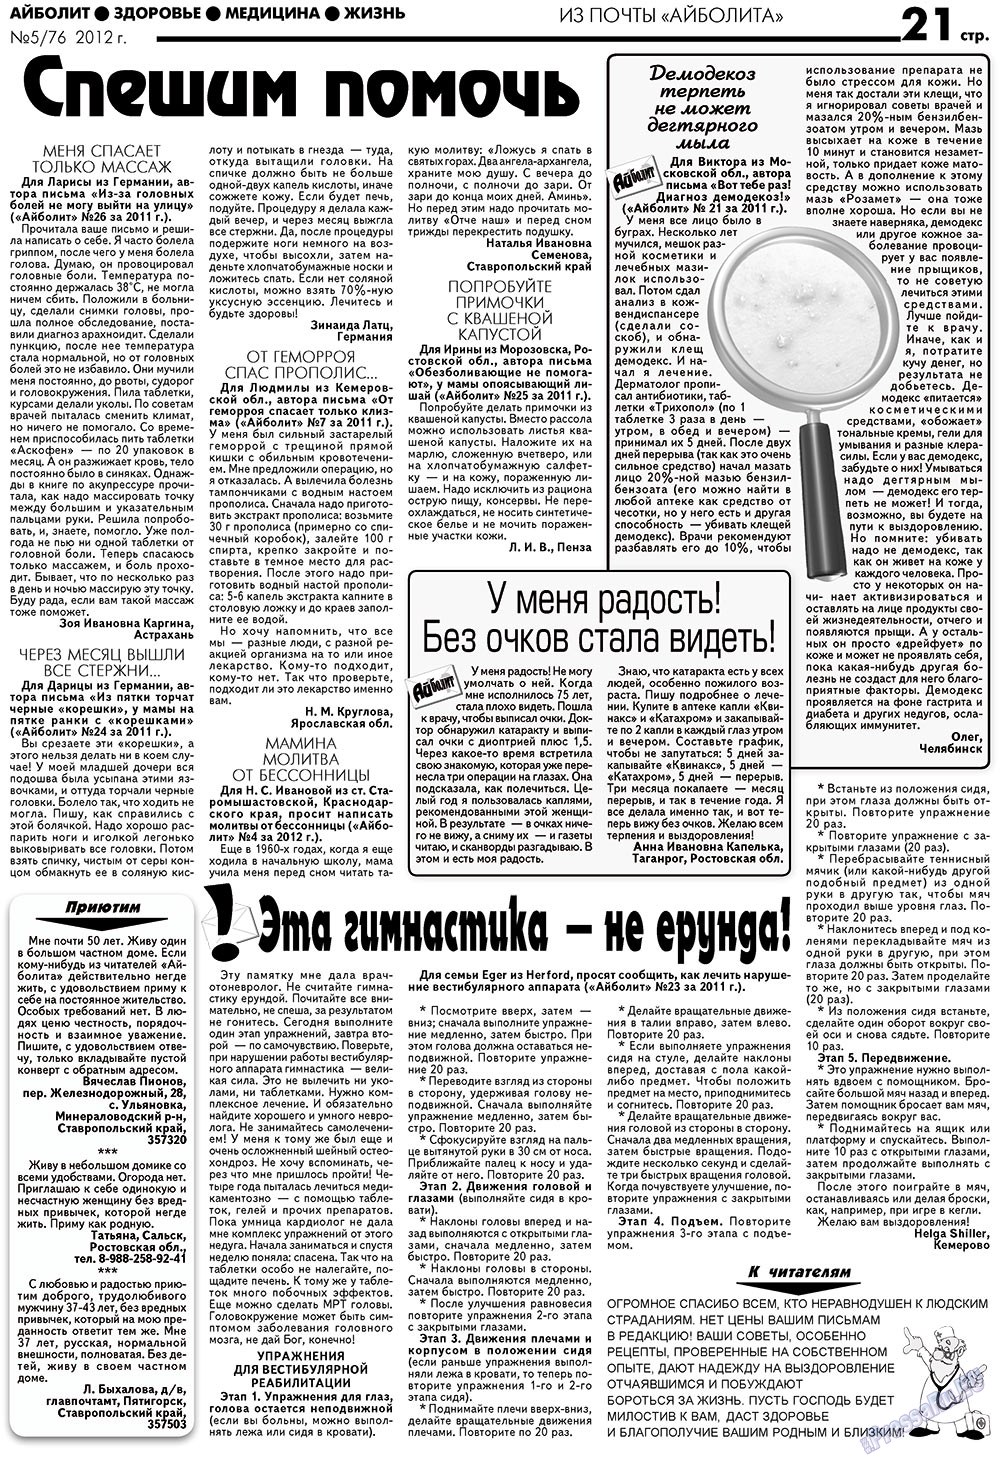 АйБолит, газета. 2012 №5 стр.21